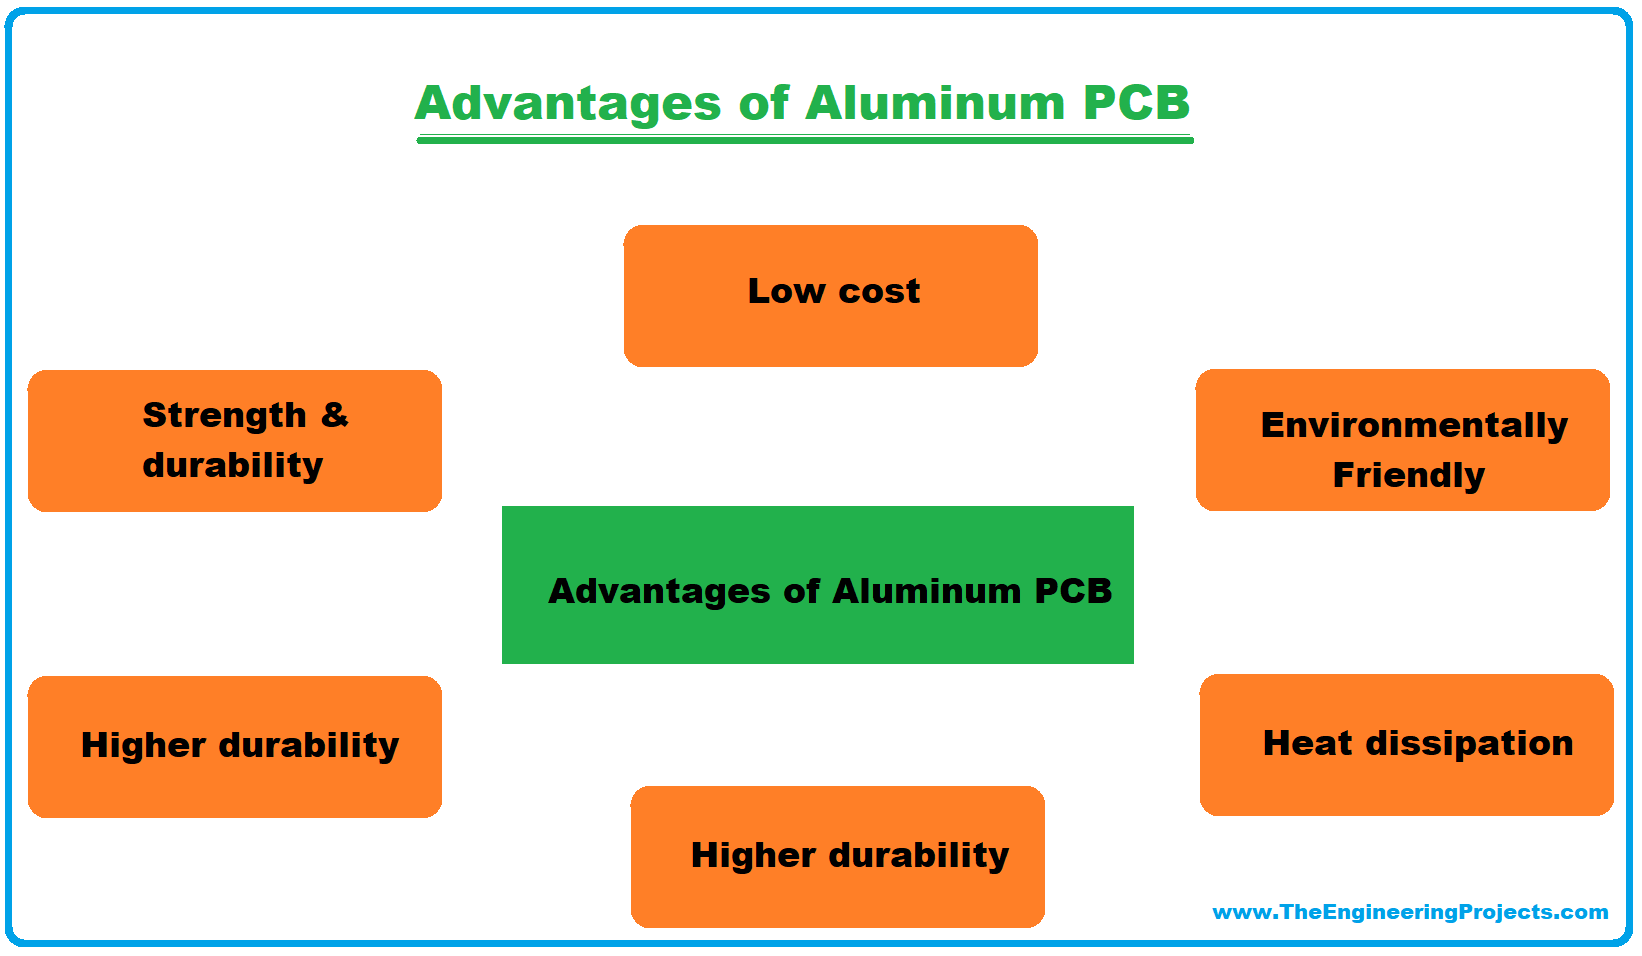 aluminum pcb, types of aluminum pcb, introduction to aluminum pcb, intro to aluminum pcb, applications of aluminum pcb, advantages of aluminum pcb, what is aluminum pcb